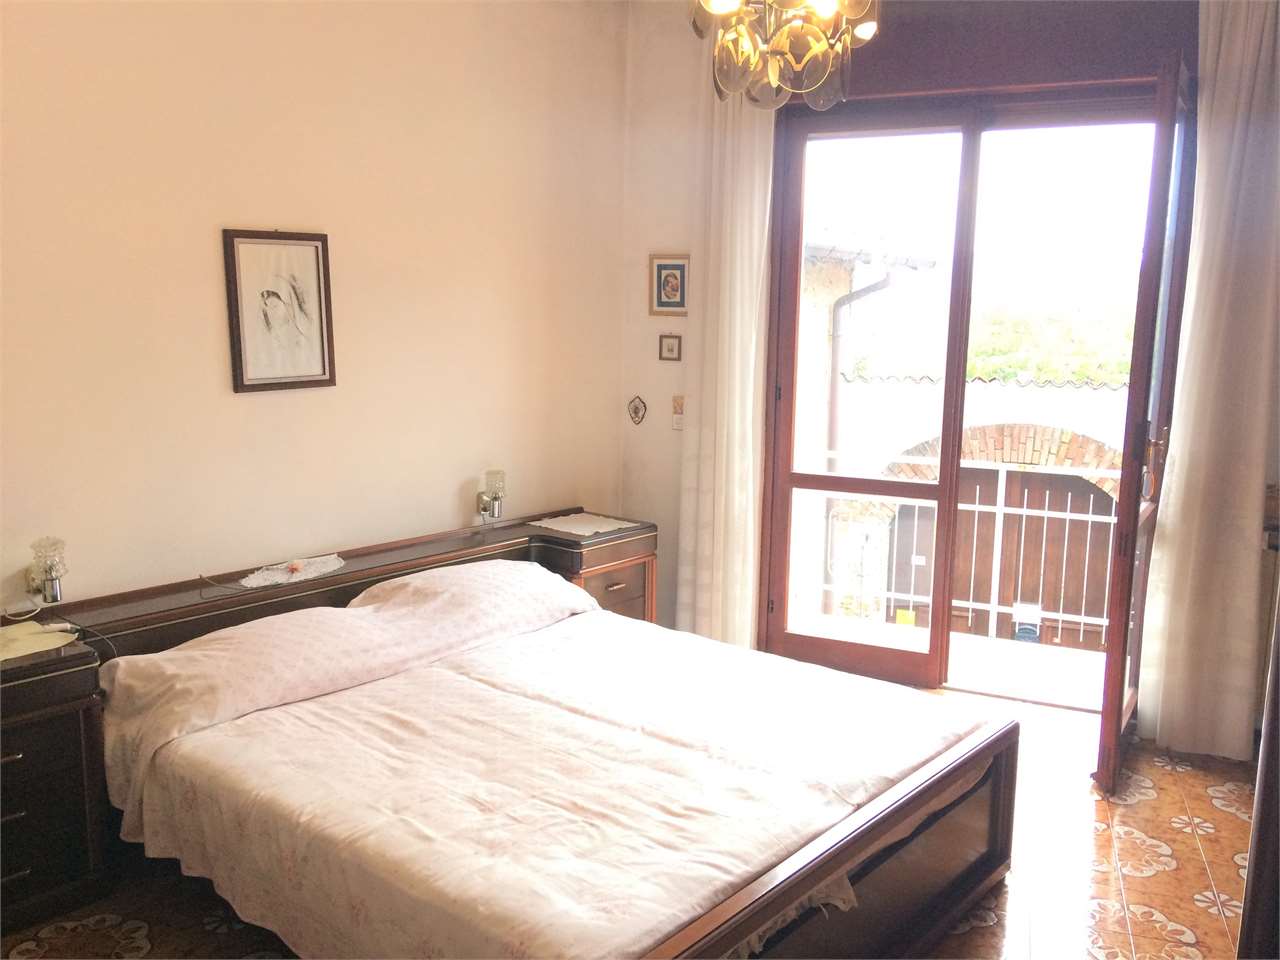 Appartamento in vendita a Castronno, 3 locali, prezzo € 59.000 | CambioCasa.it